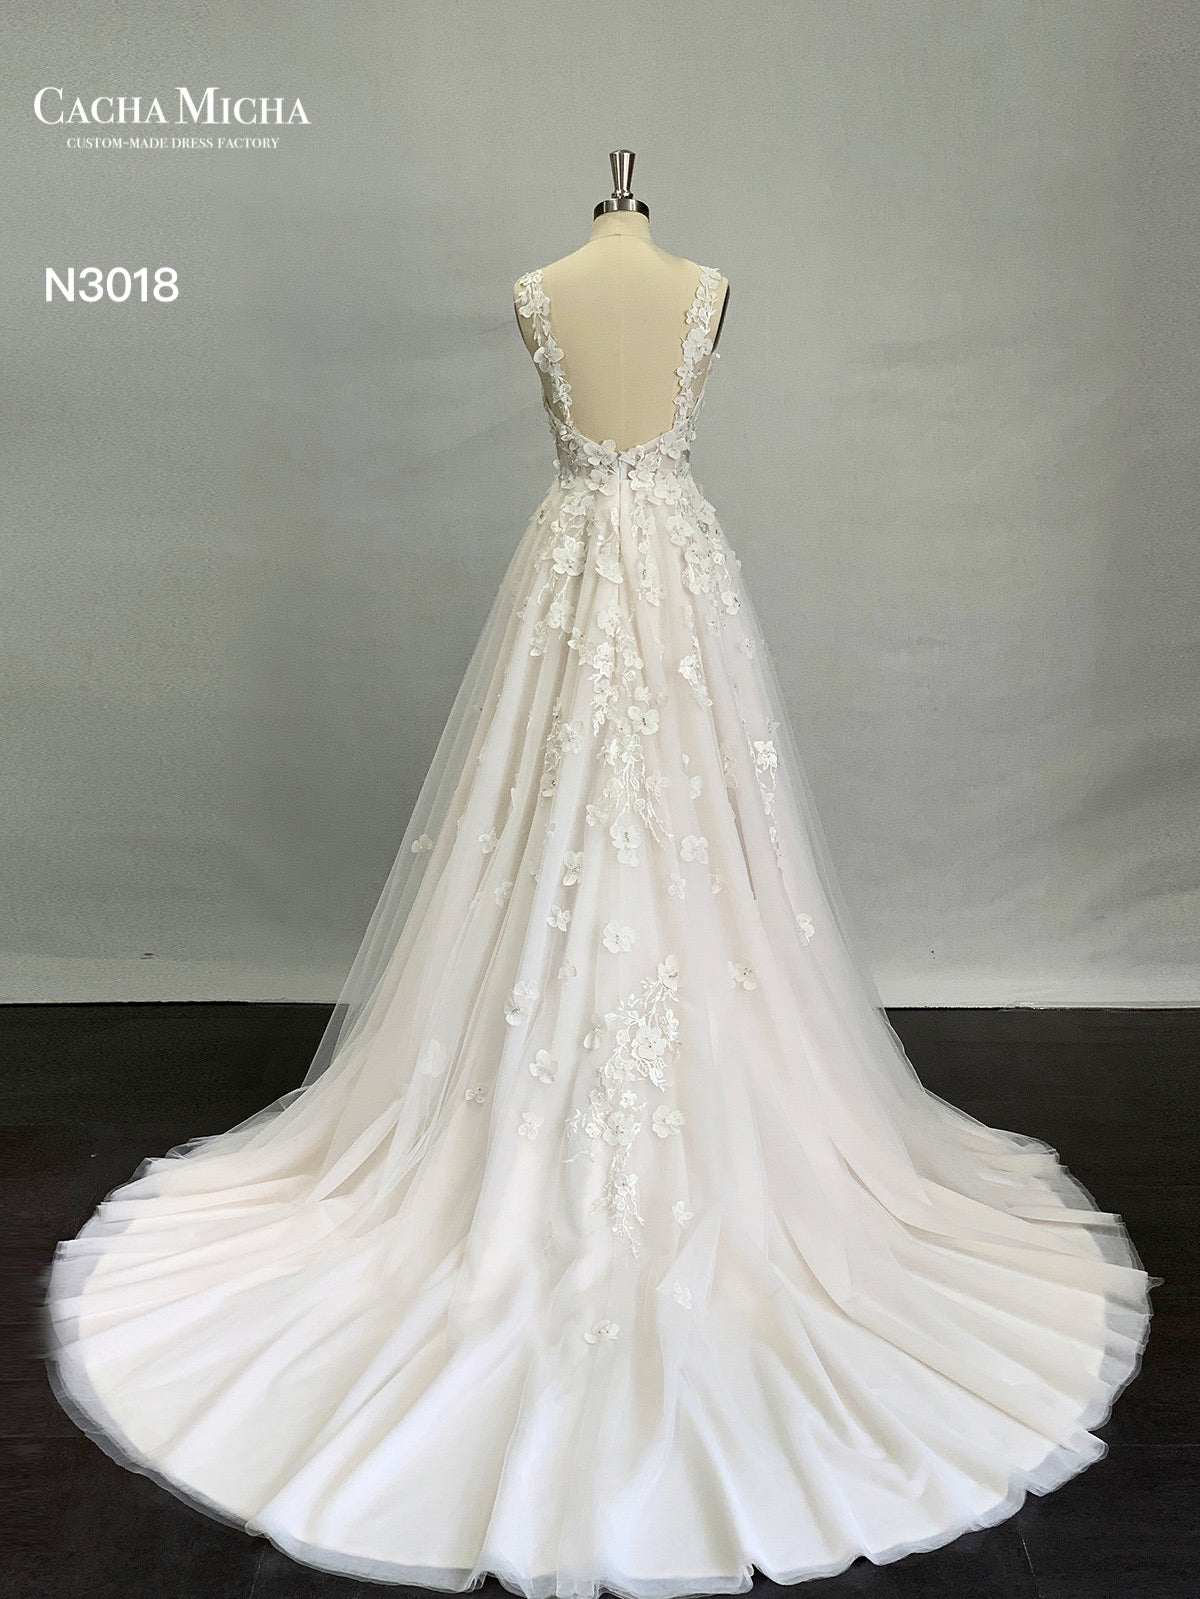 Beautiful 3D Lace Lace Blush Wedding Dress N3018